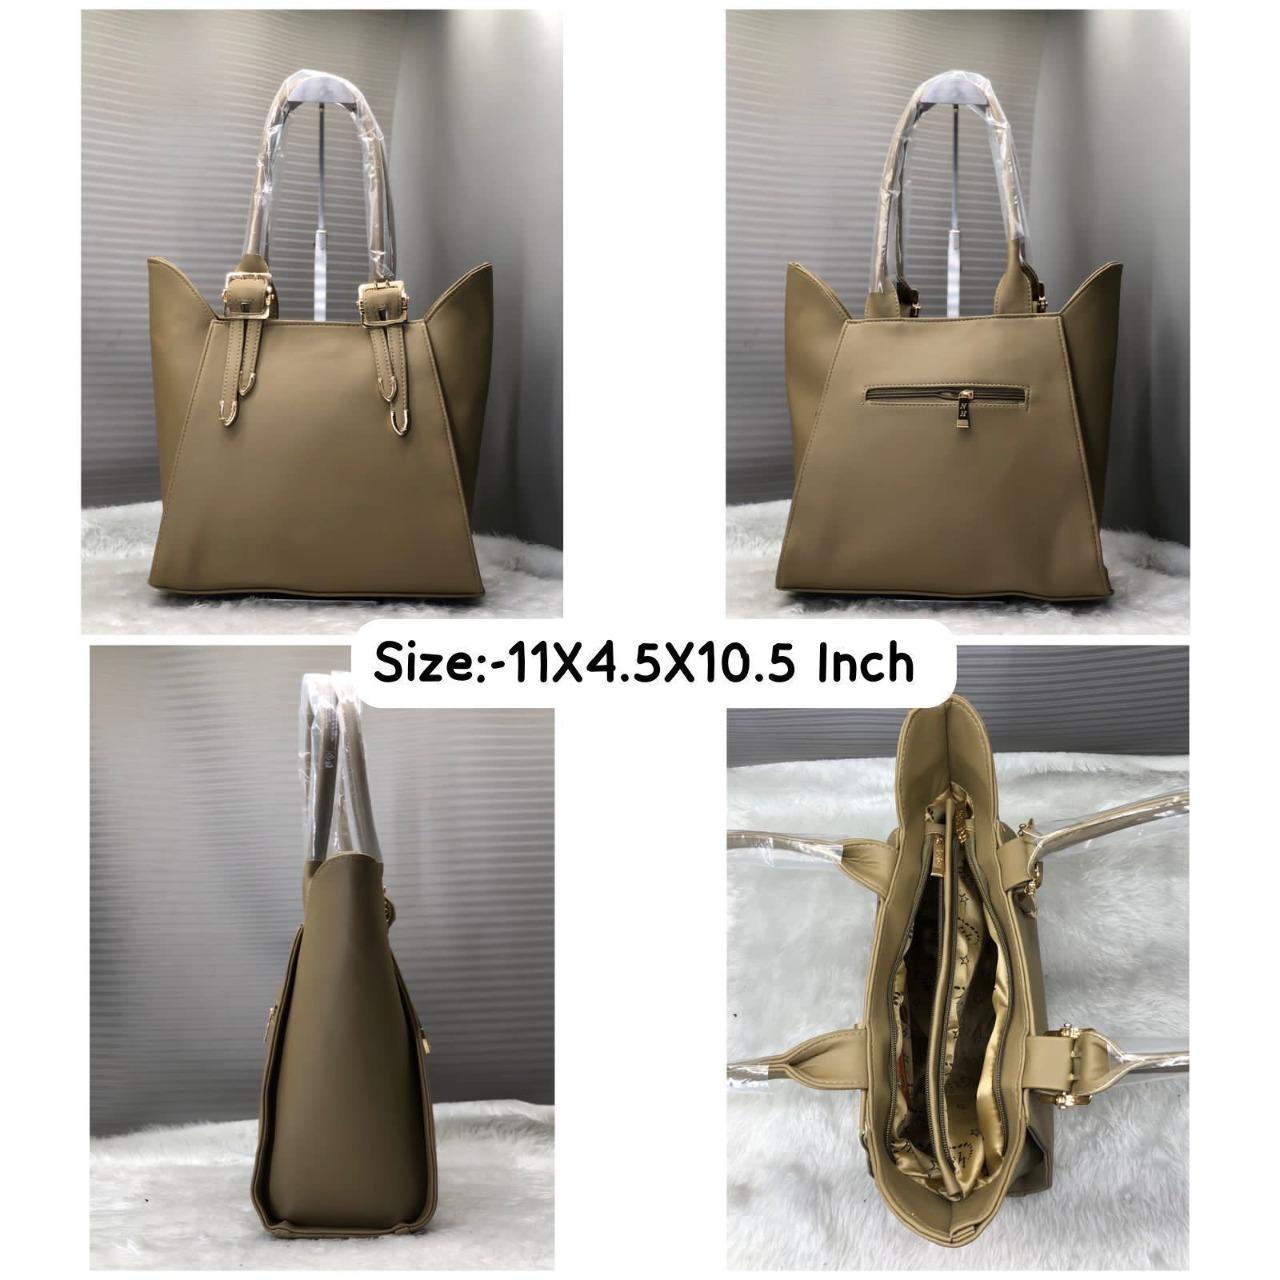 PU Leather Shoulder Bag/Handbag for Women and Girls